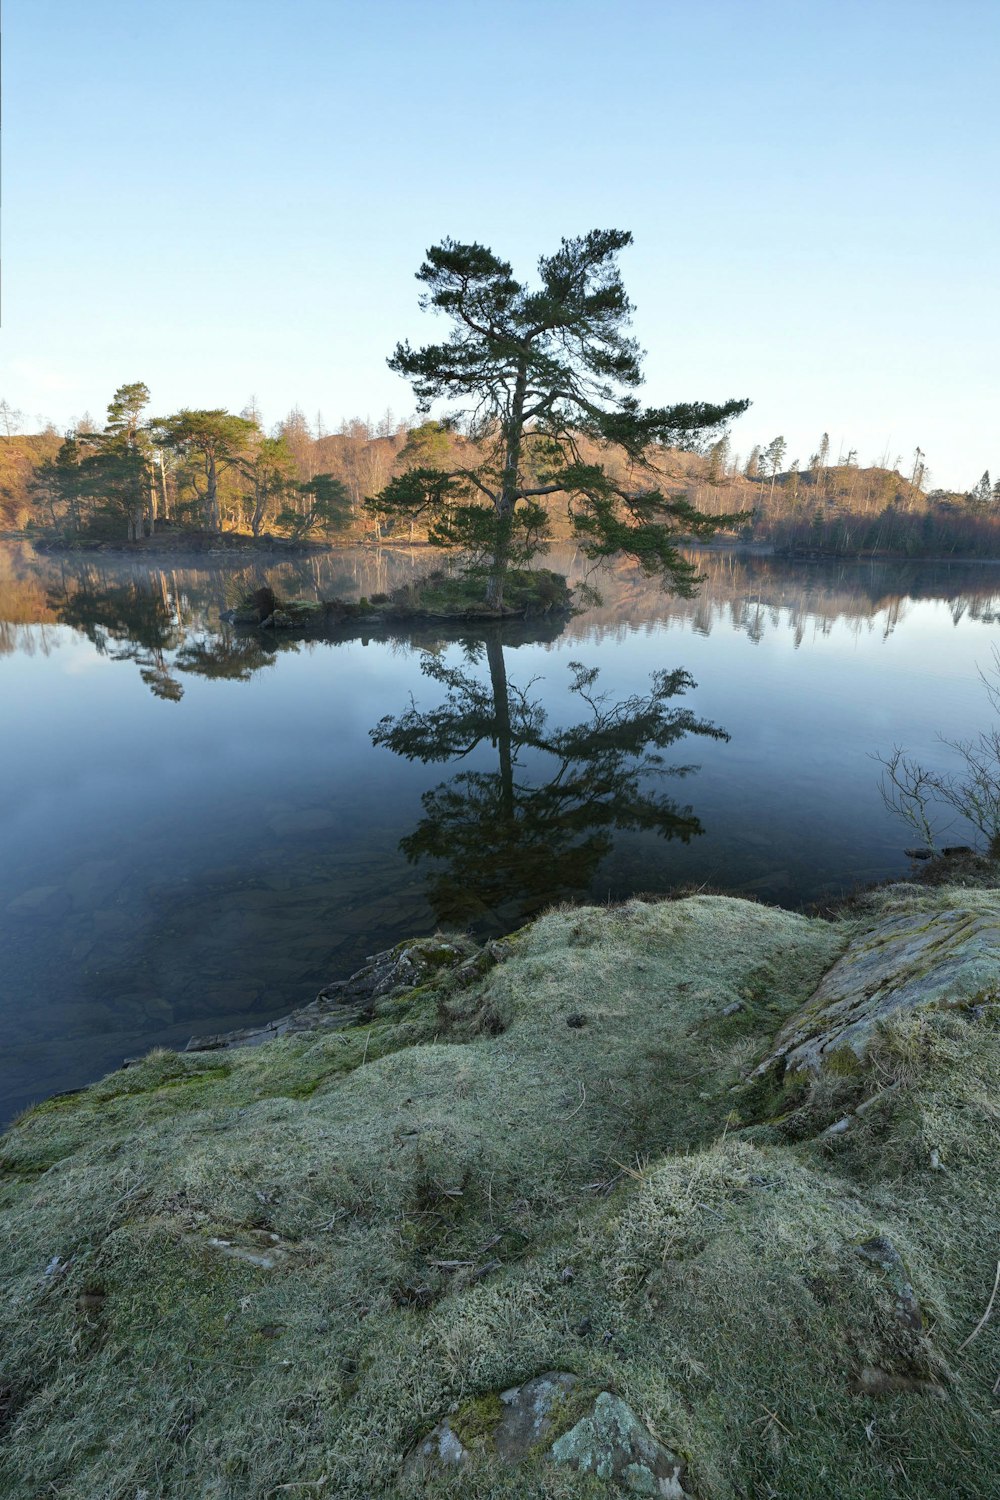 Un árbol solitario al borde de un lago